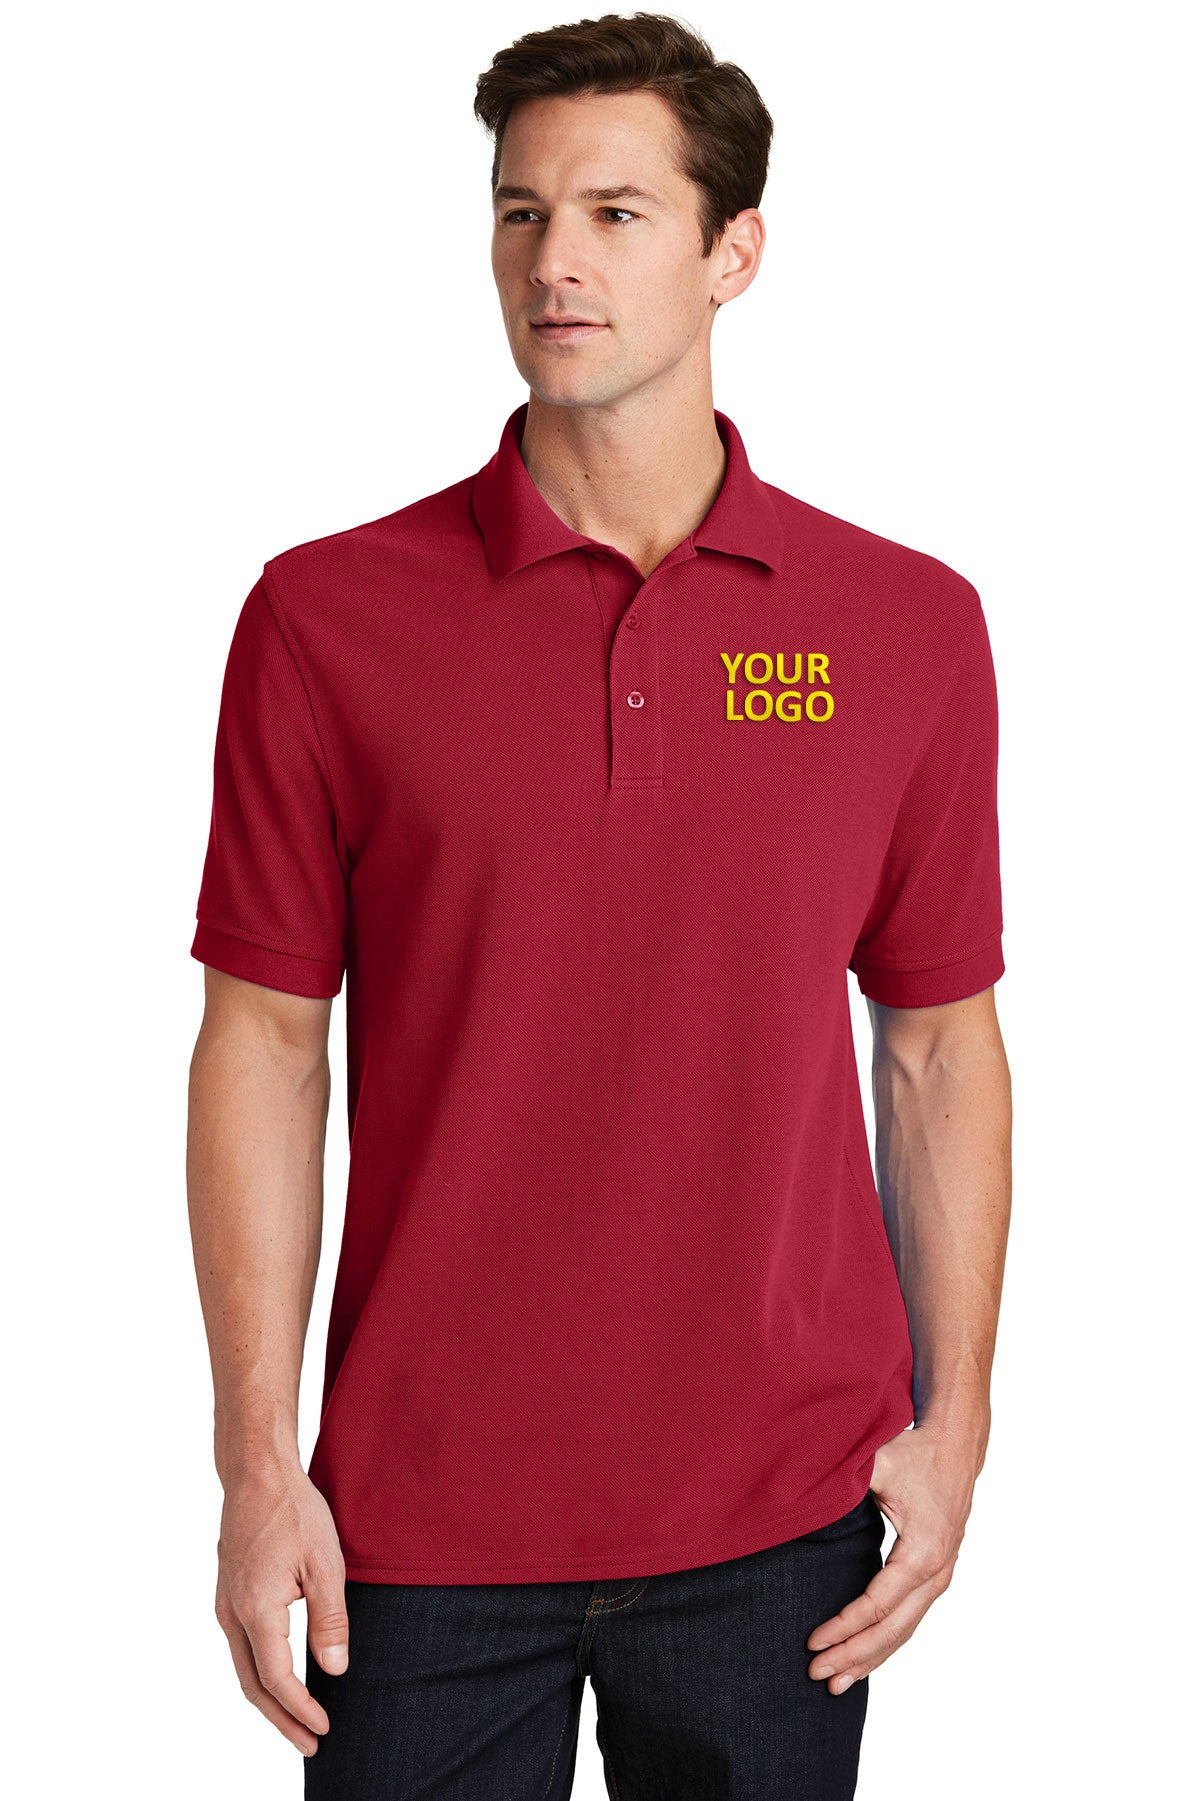 Port & Company Red KP1500 custom company polo shirts